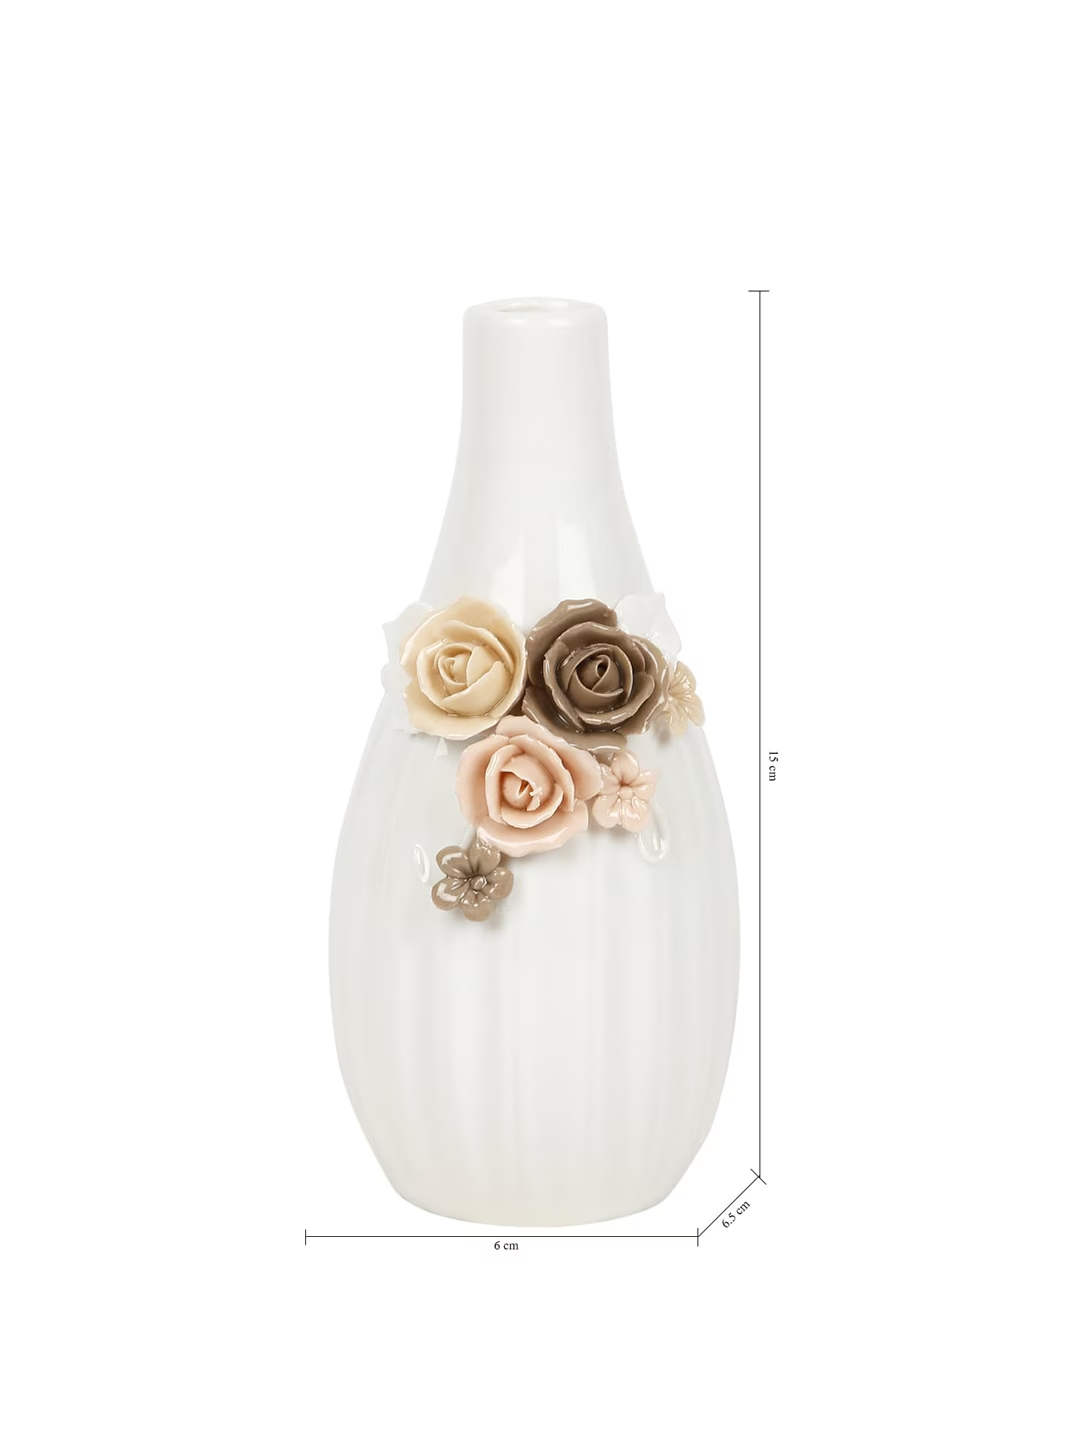 White & Brown Ceramic Flower Vase